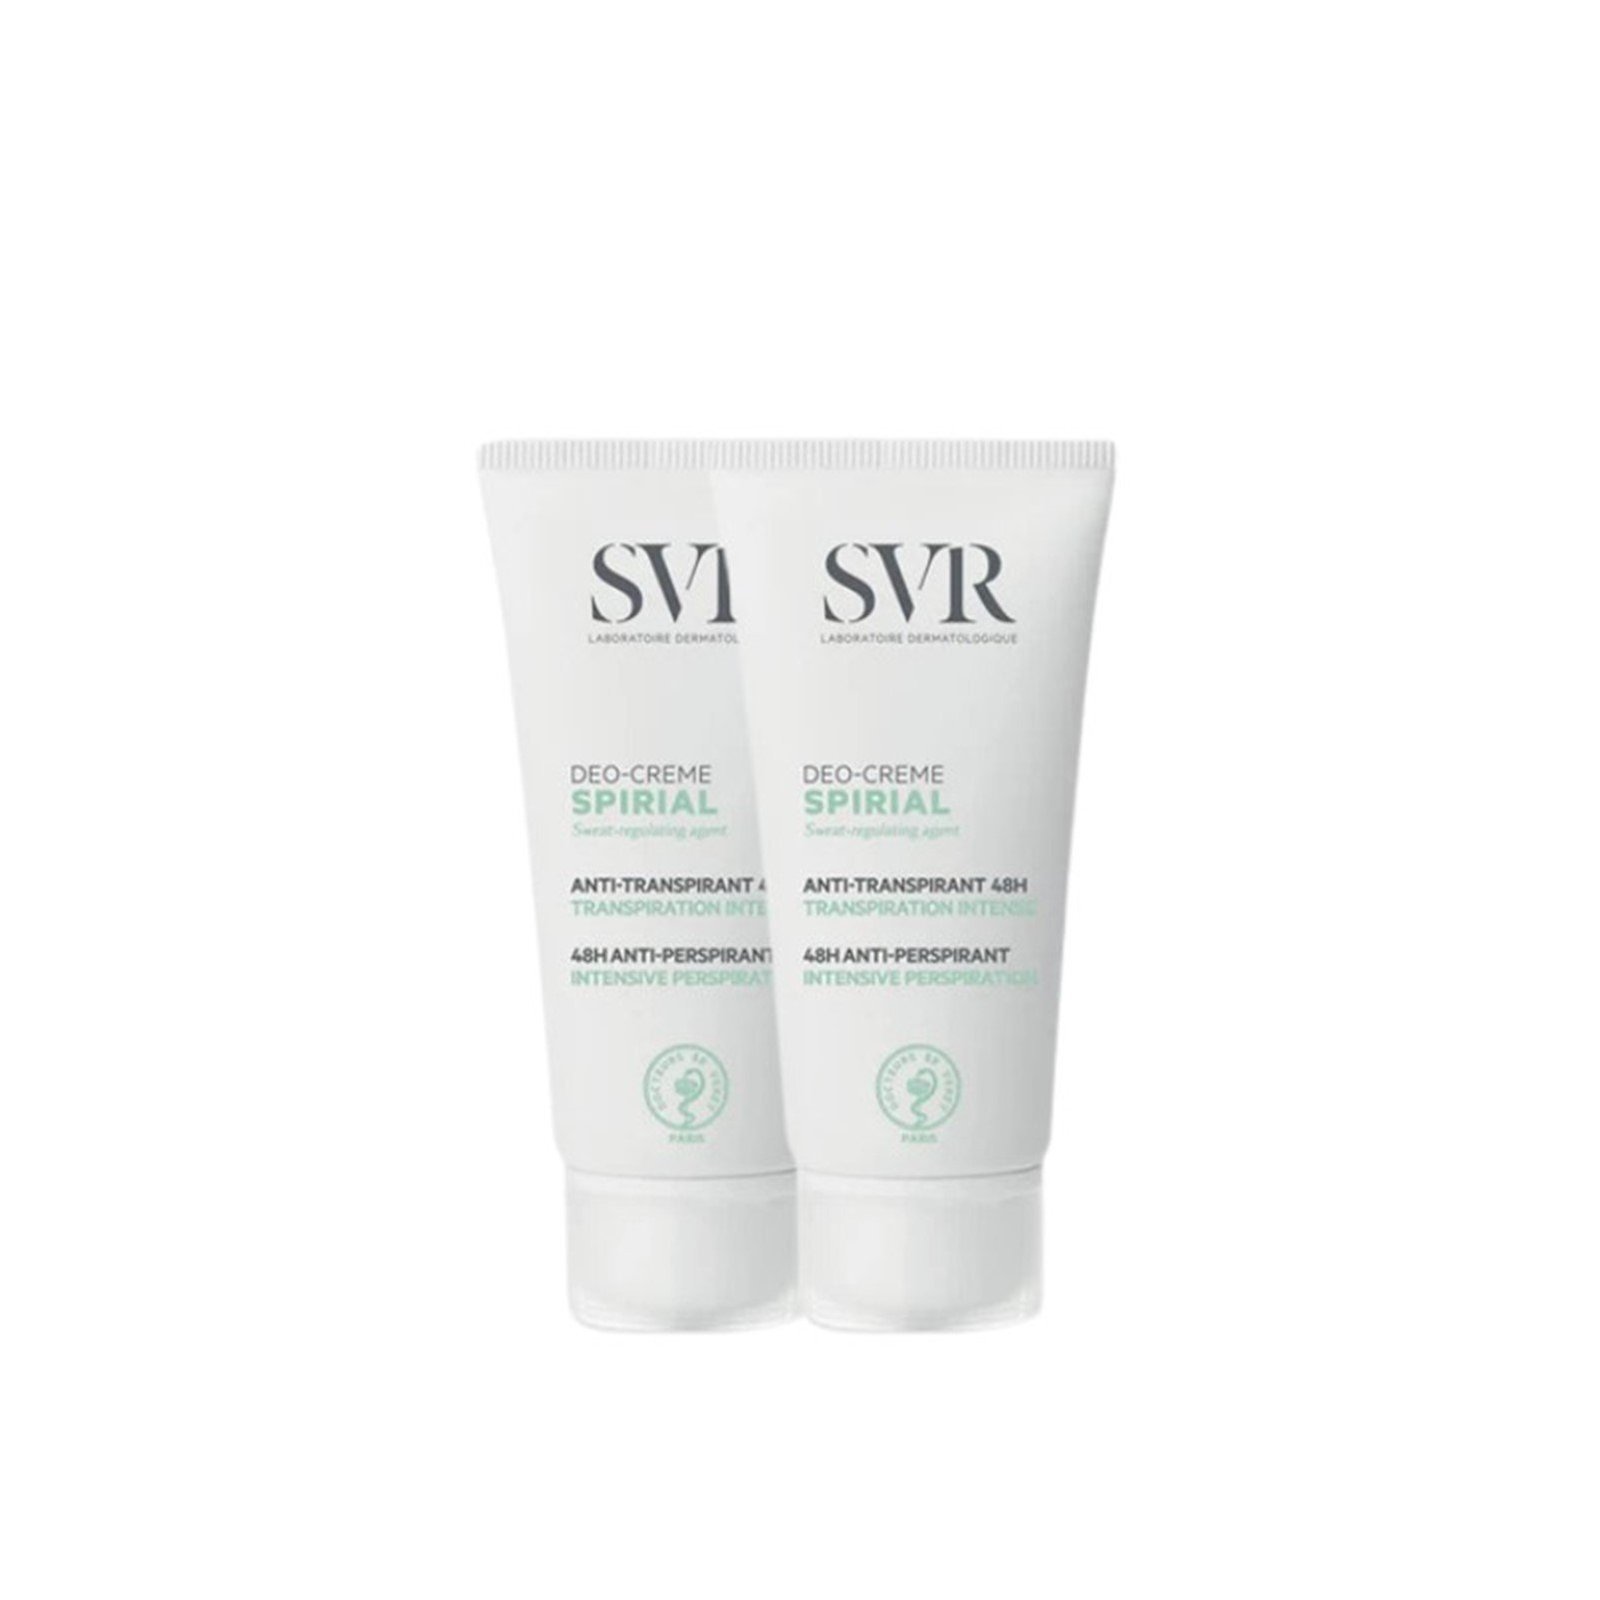 SVR Spirial Cream 48h Intense Anti-Perspirant Deodorant 50ml x2